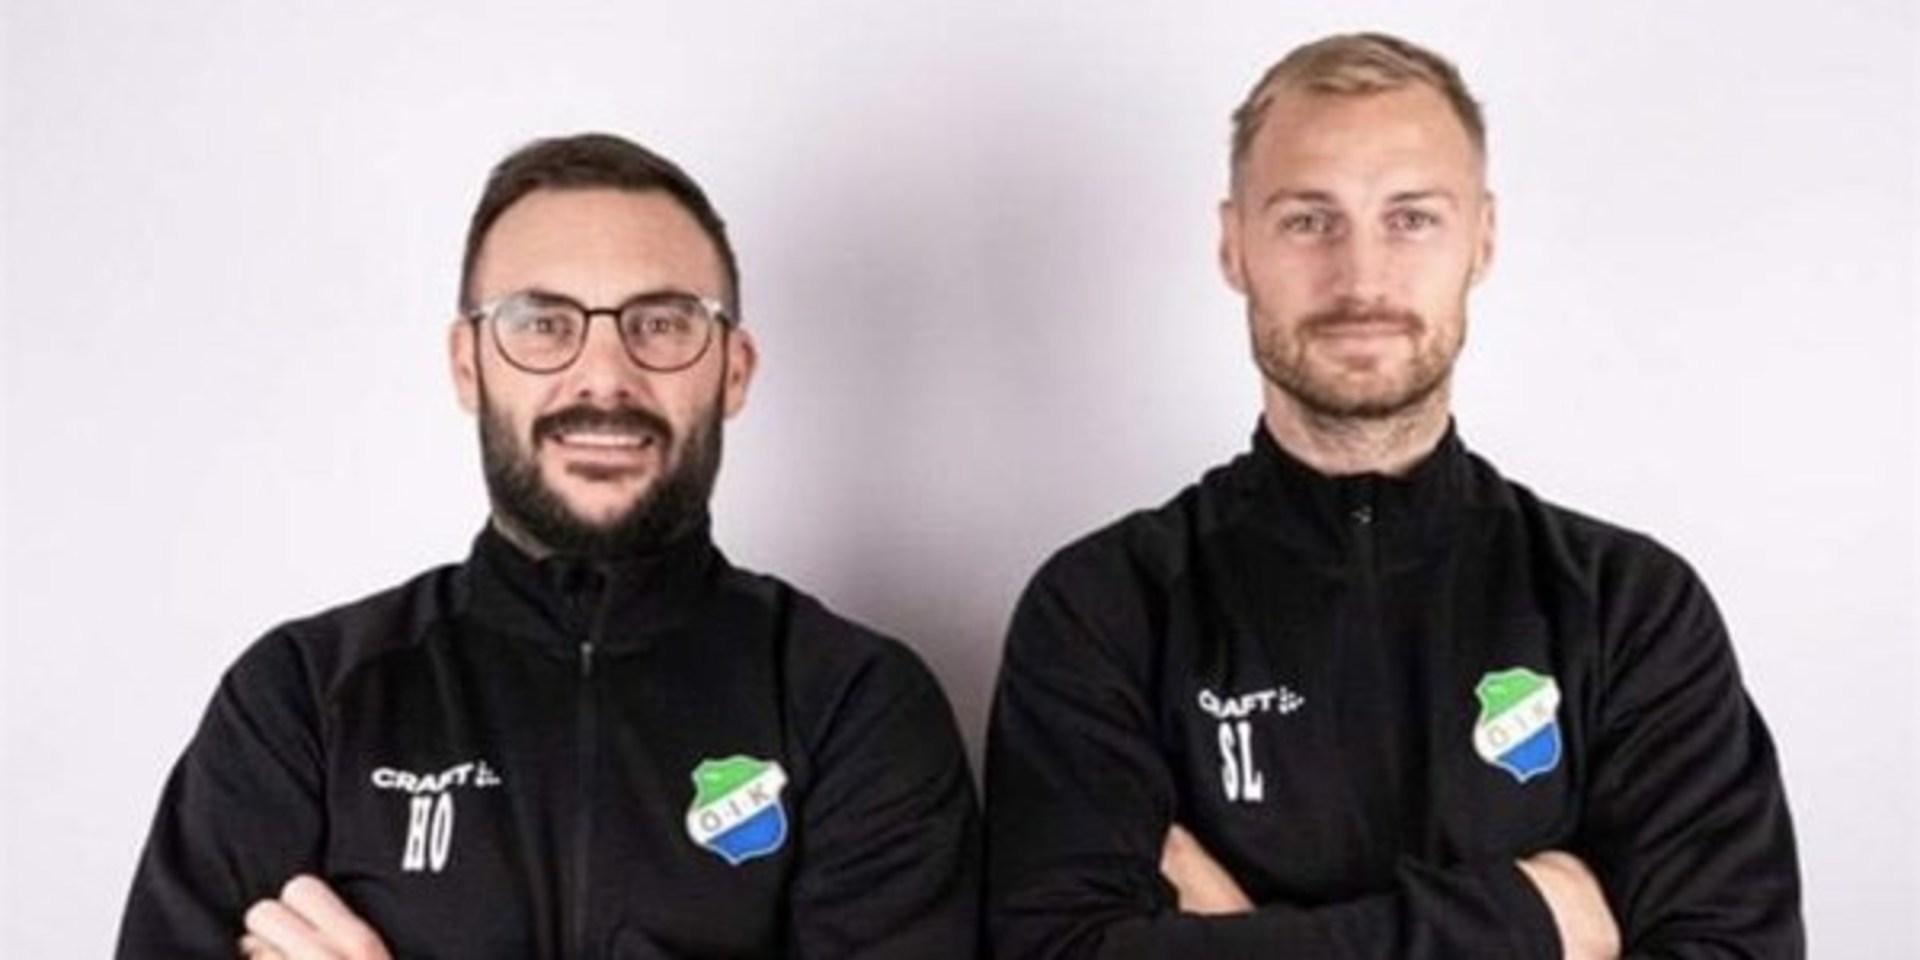 Håkan Olsson och Mattias Larsson, huvudtränare respektive assisterande, är de två personer som ska leda Ödsmåls IK under 2022.